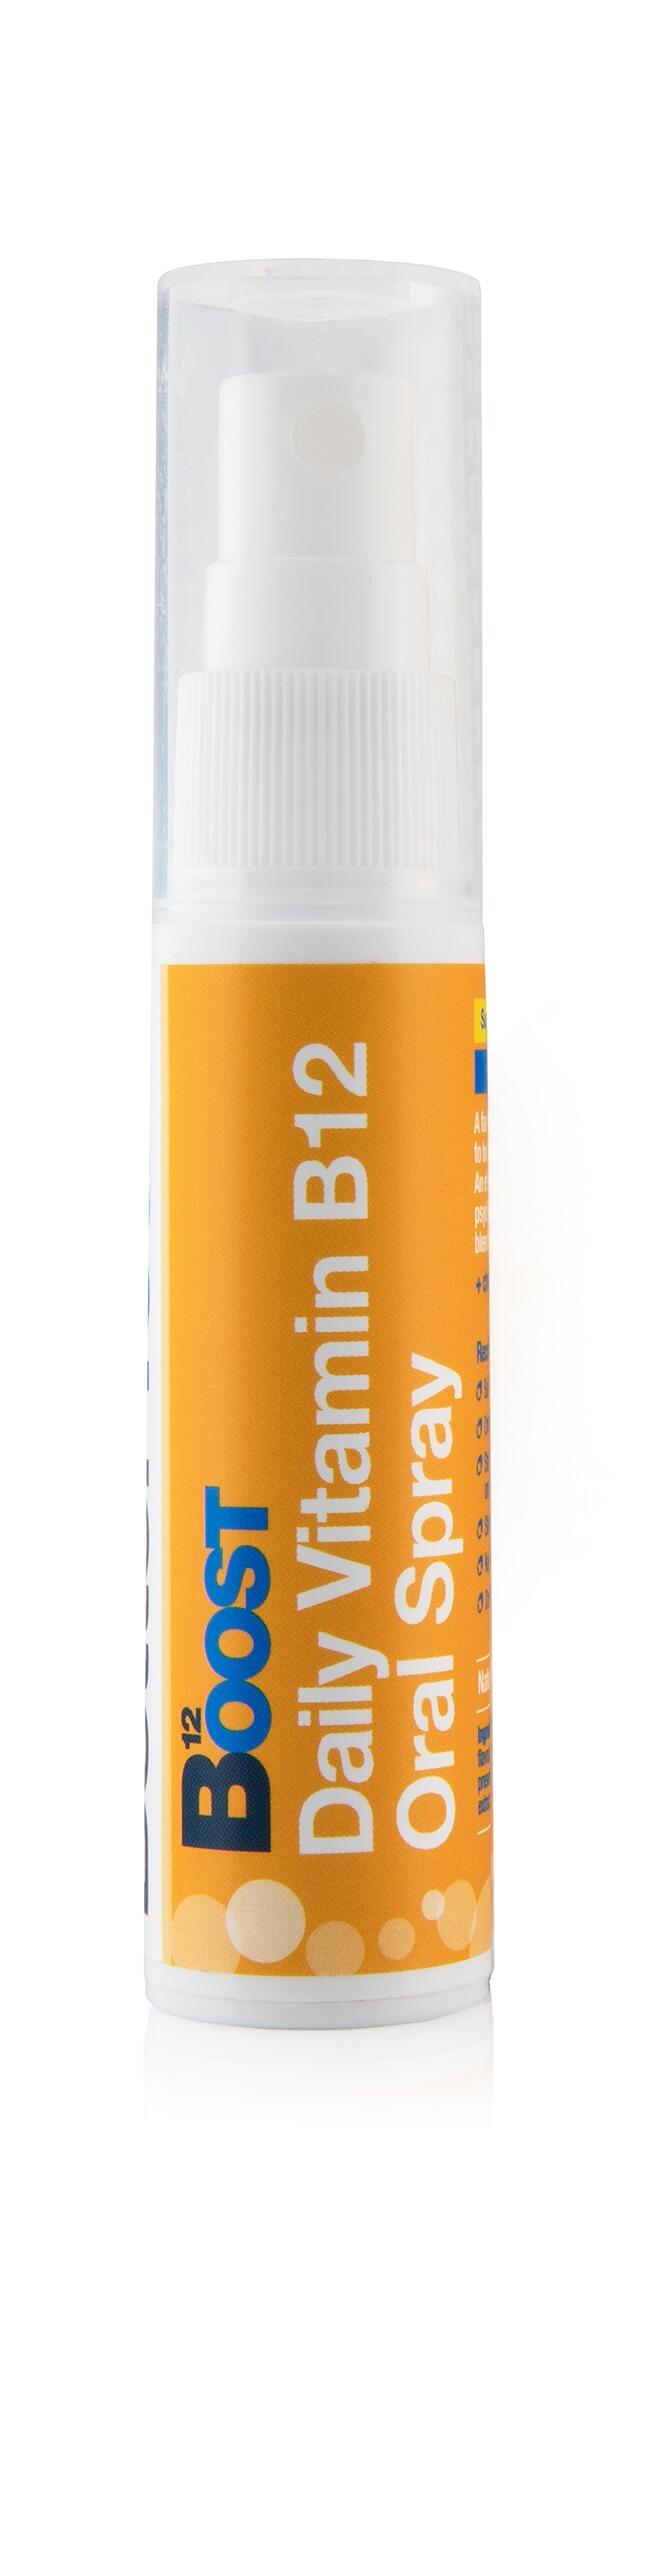 Boost B12 Oral Spray, 25ml 2